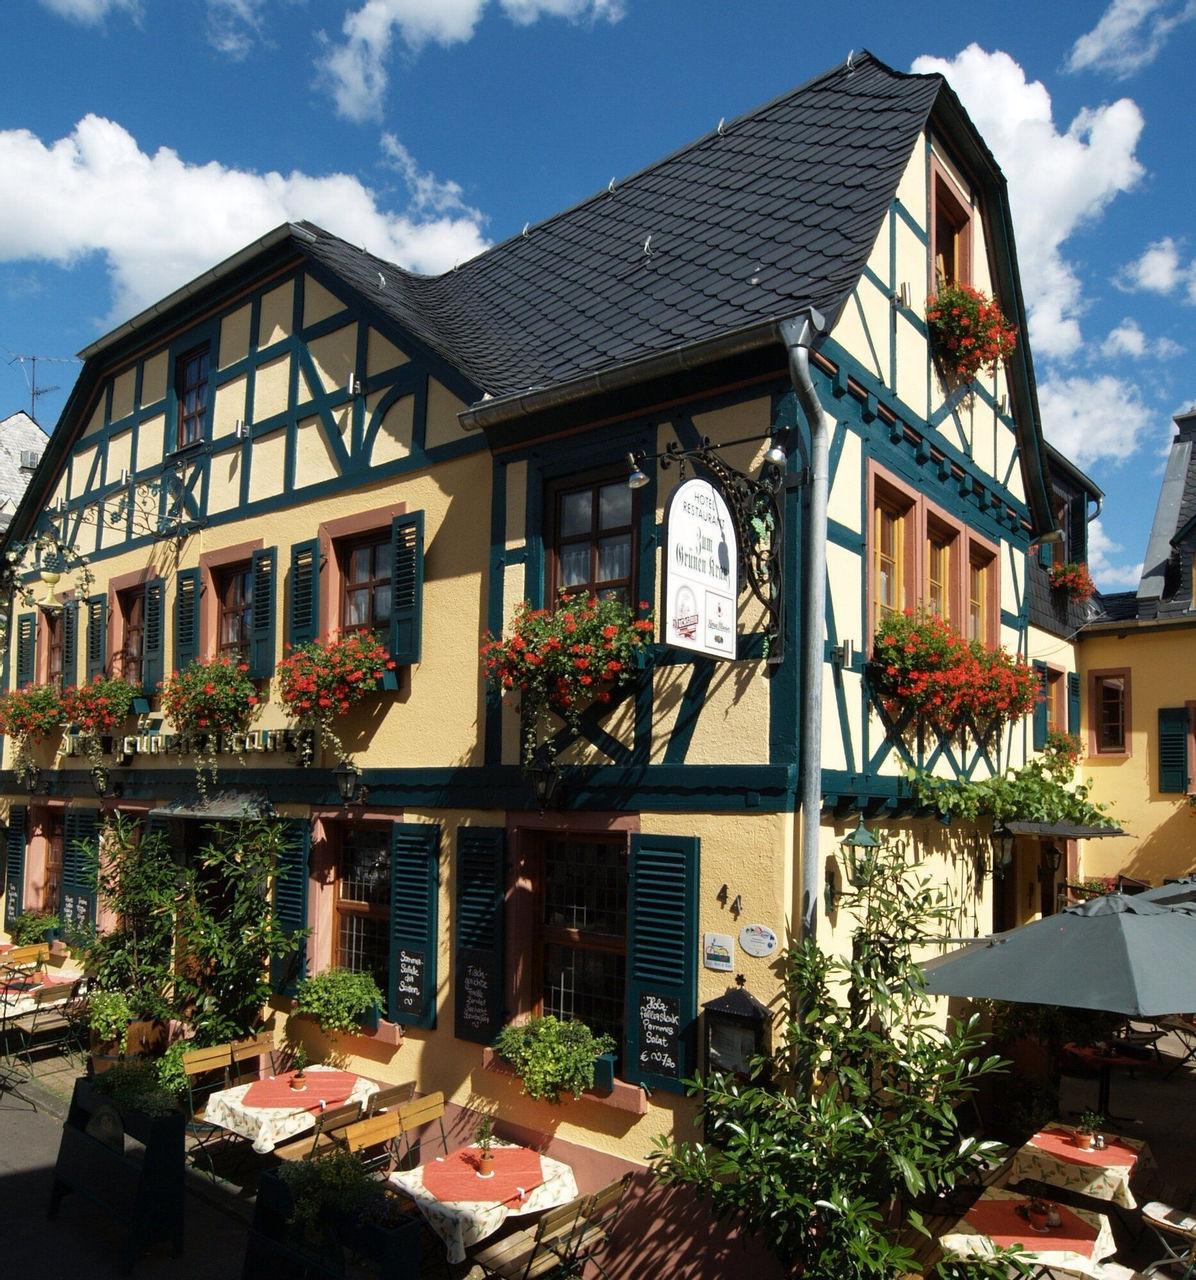 Exterior & Views 1, Historisches Hotel Weinrestaurant Zum Grünen Kranz, Rheingau-Taunus-Kreis